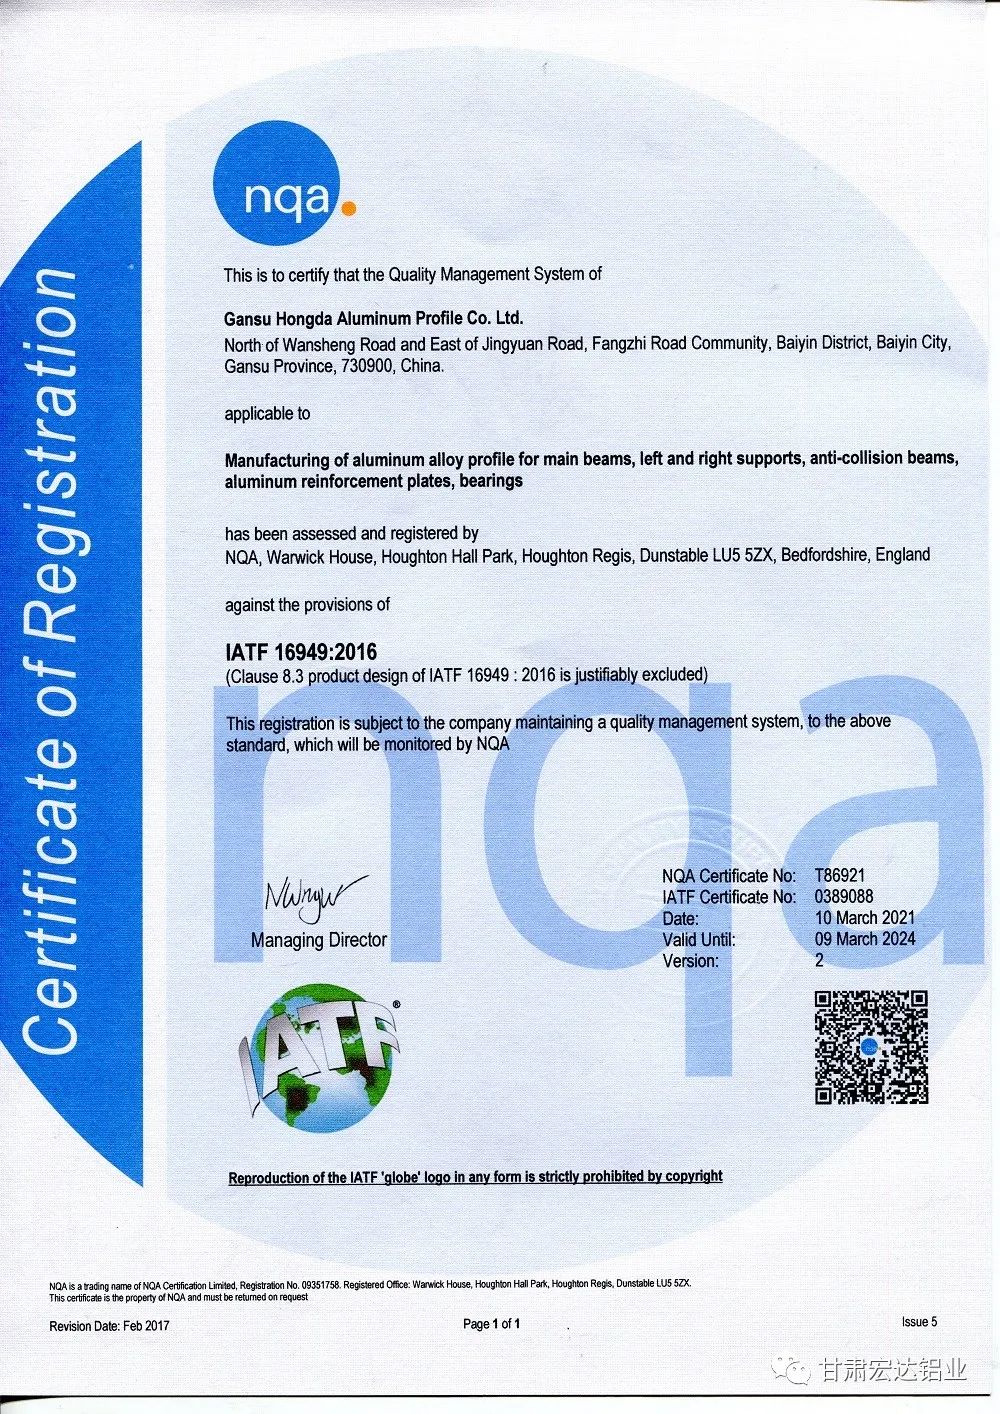 甘肅宏達鋁業通過IATF16949汽車行業管理體系擴項審核